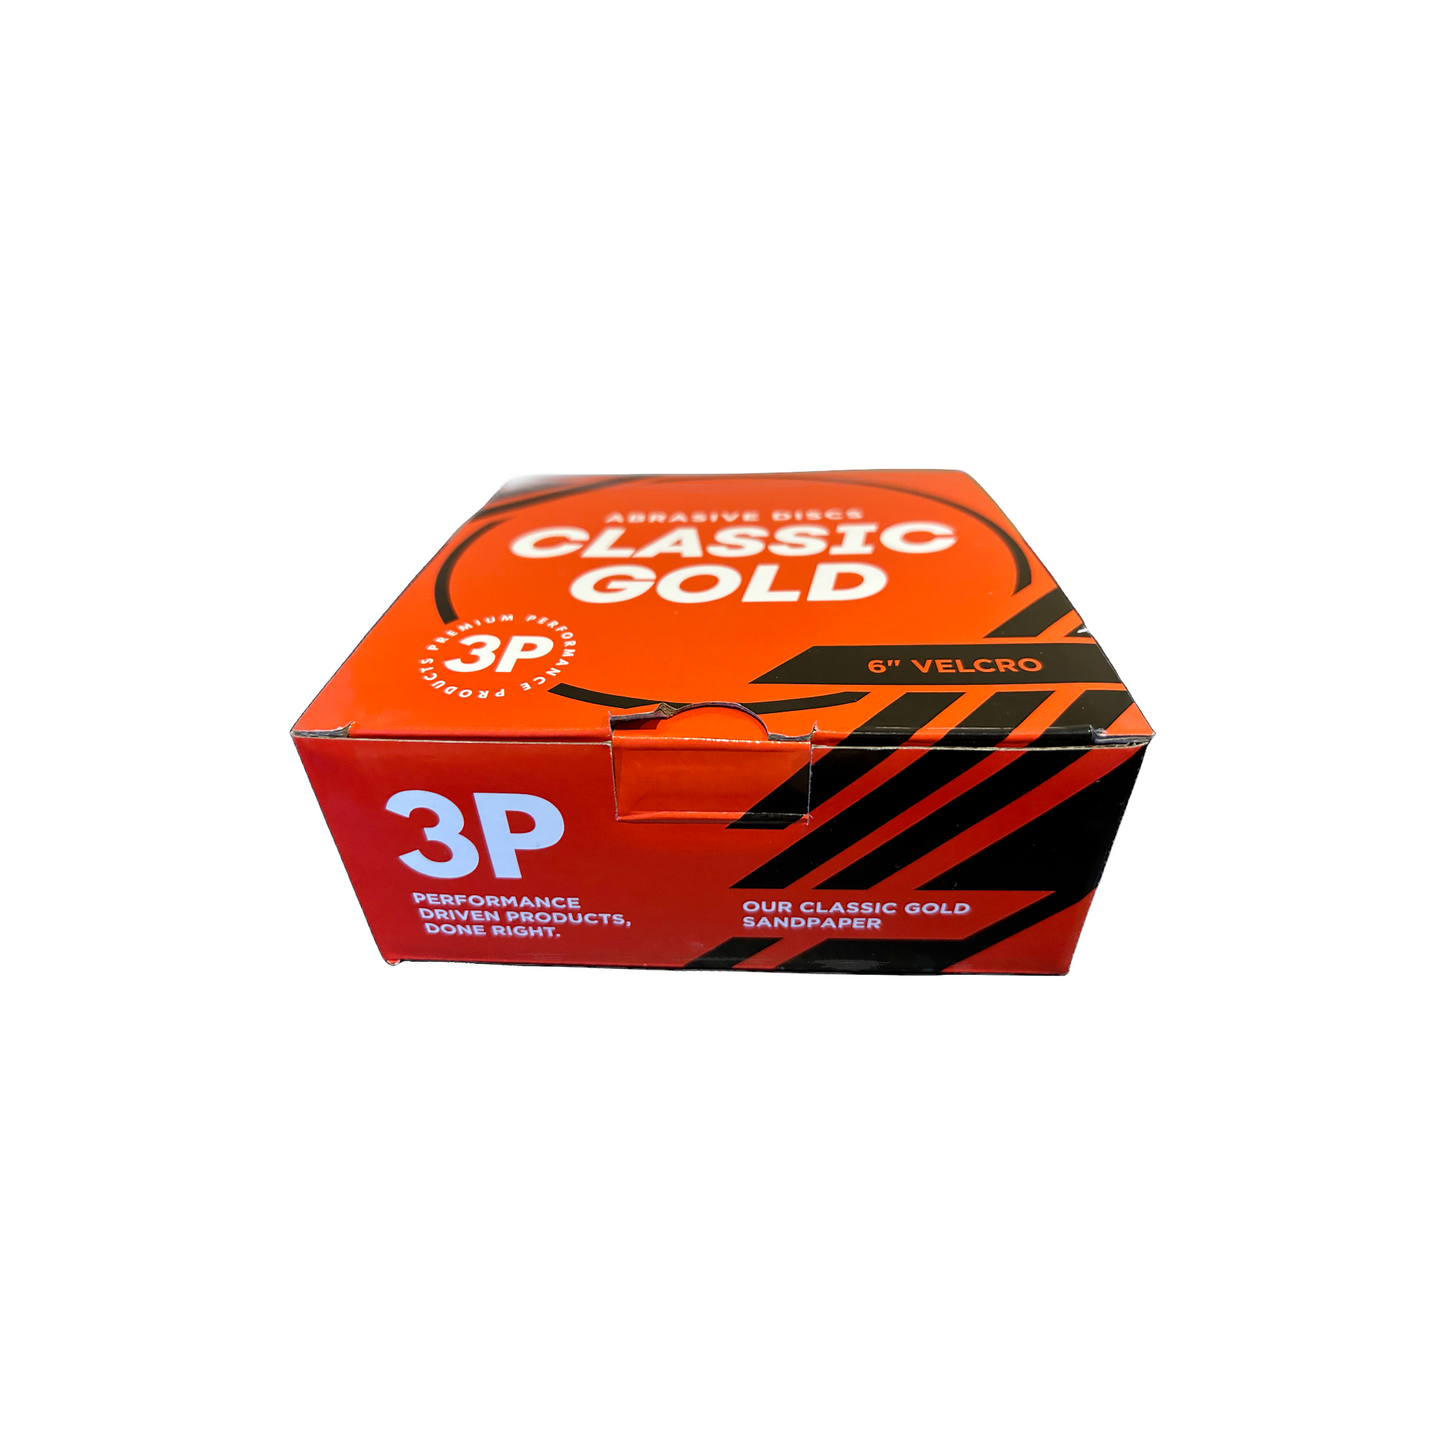 3P 6" Velcro Sanding Discs P40-P800 50pc/Box